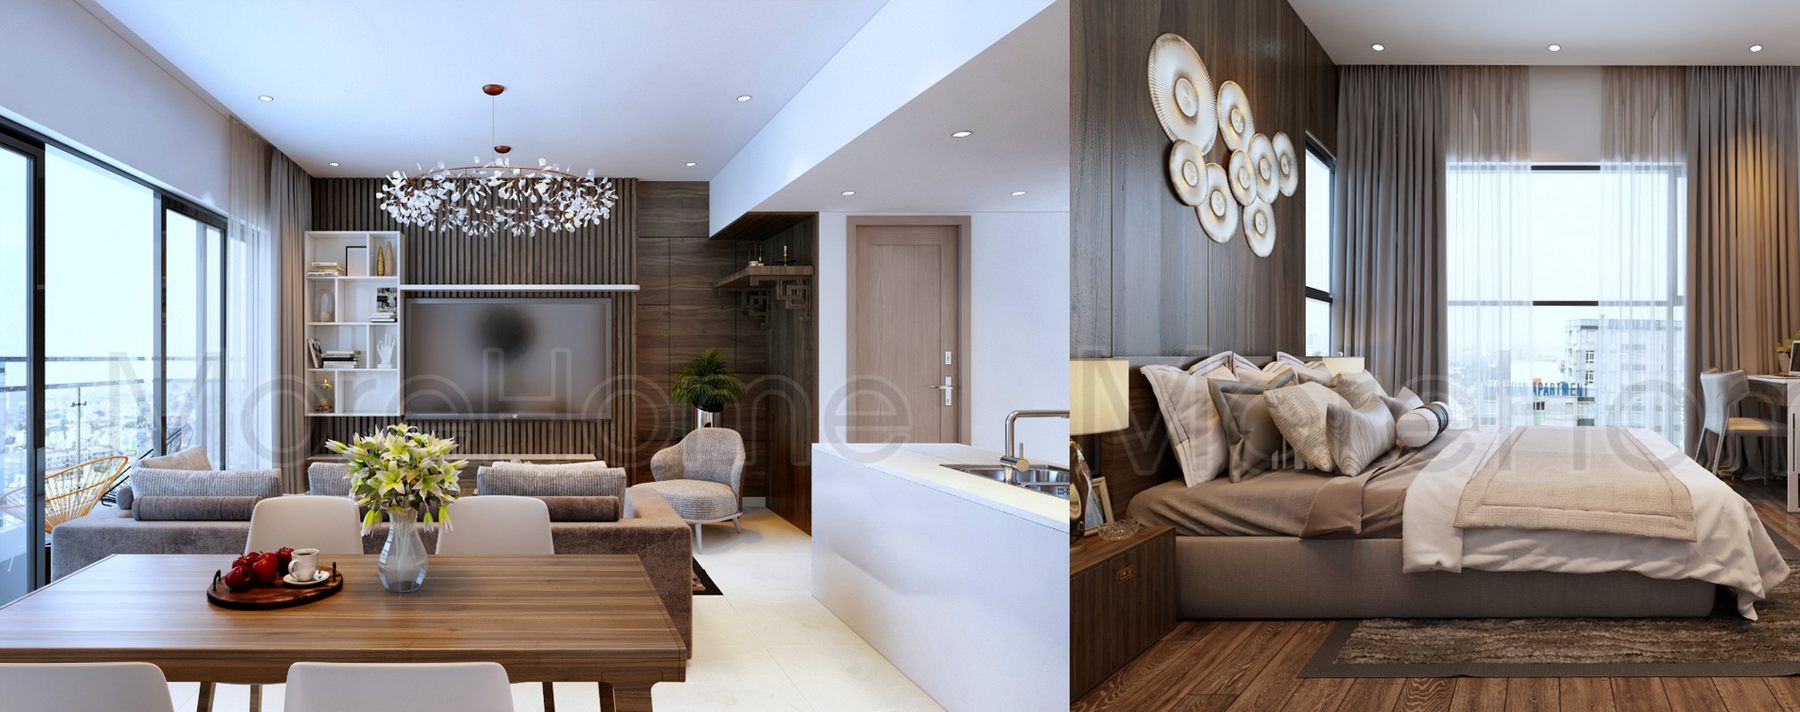 Thiết kế nội thất căn hộ hiện đại chung cư GateWay Thảo Điền - Quận 2